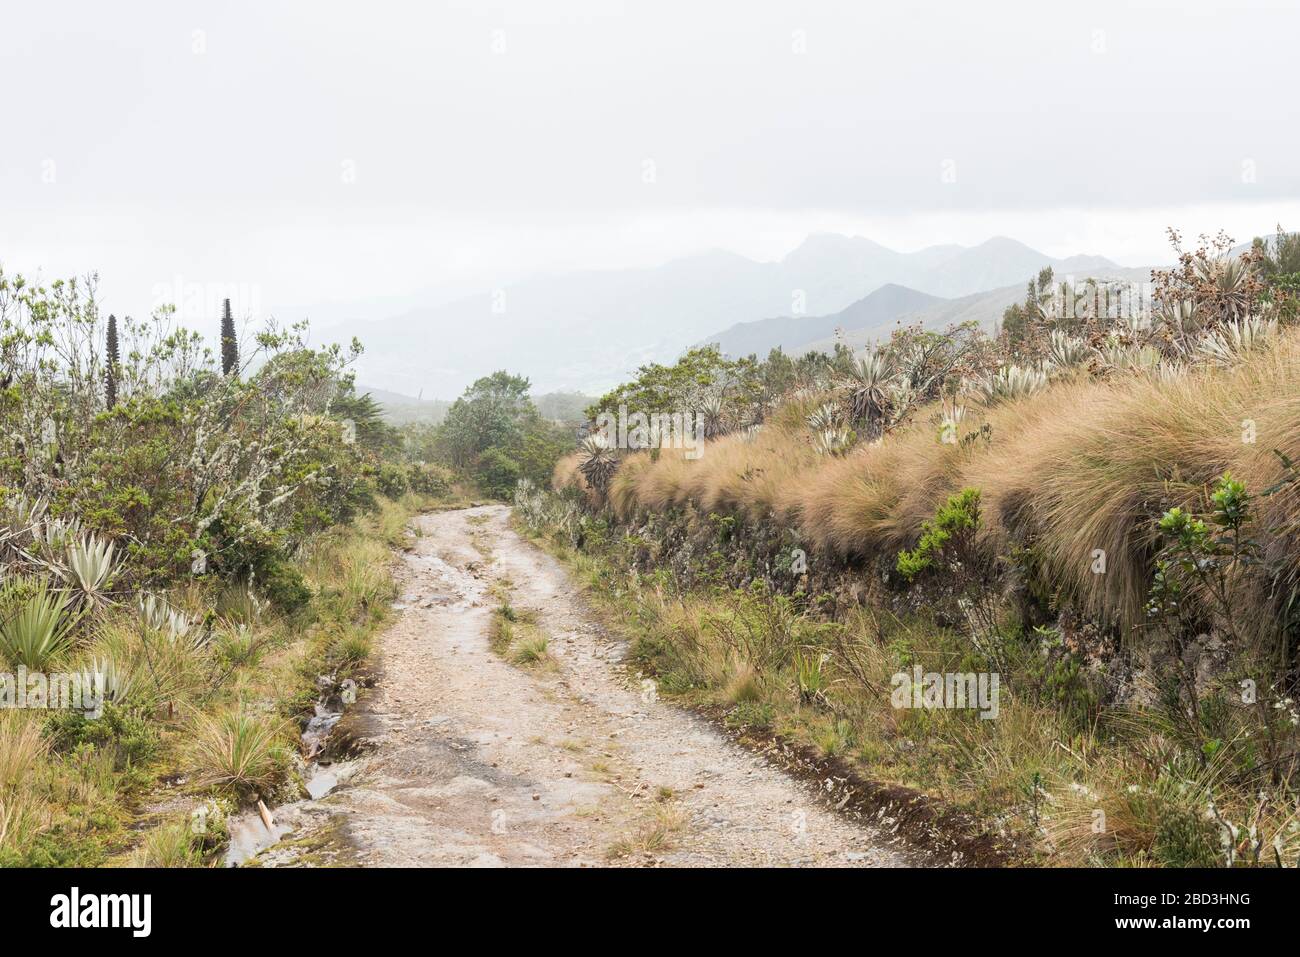 Parco Nazionale di Chingaza, Colombia. Paramo, sentiero attraverso un paesaggio di brughiera, con vegetazione autoctona, come fragilejones, espeletia, e puyas Foto Stock